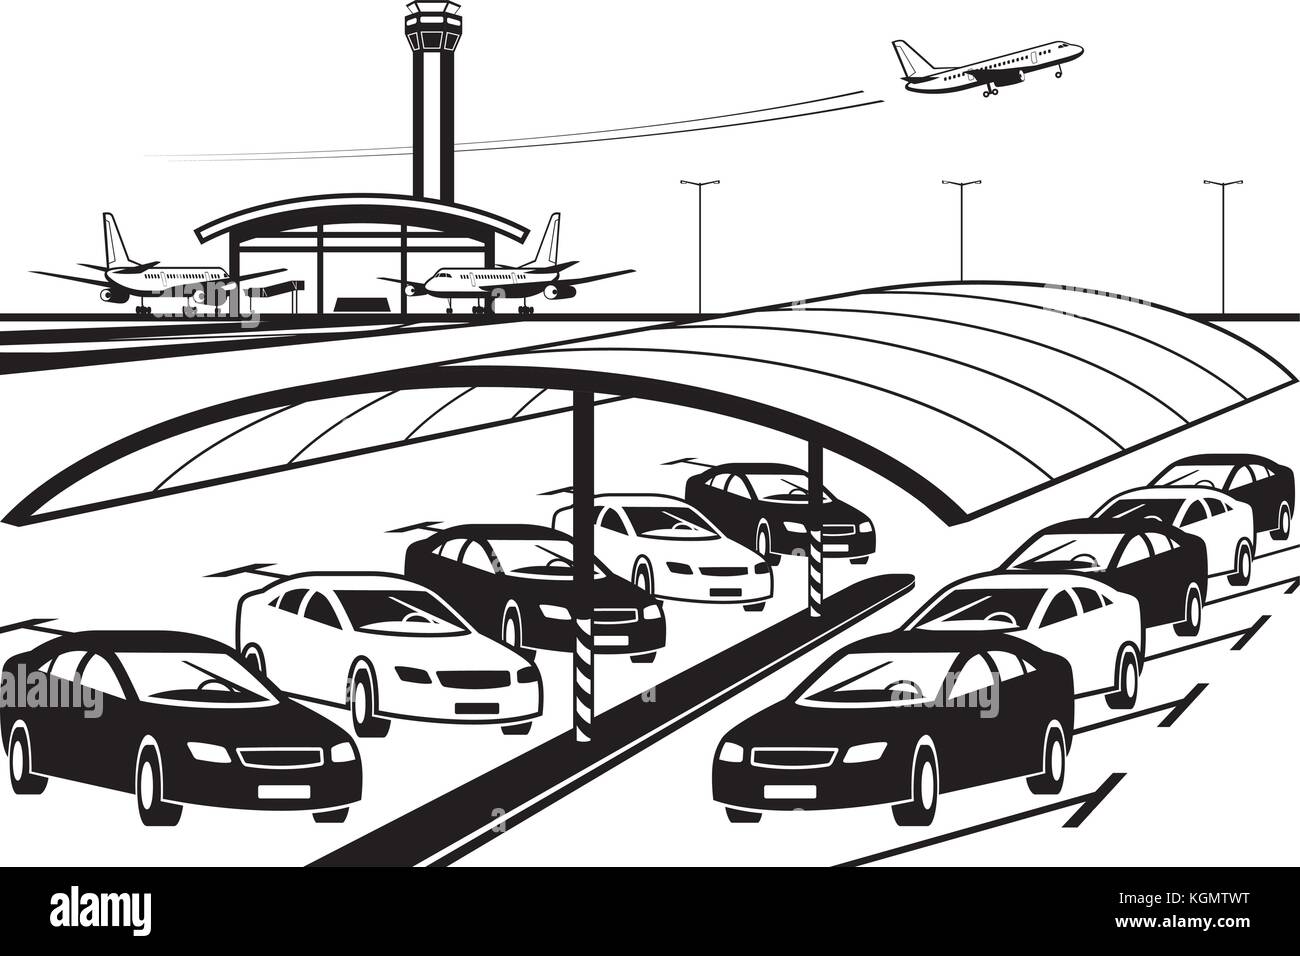 Parcheggio coperto all'aeroporto - illustrazione vettoriale Illustrazione Vettoriale